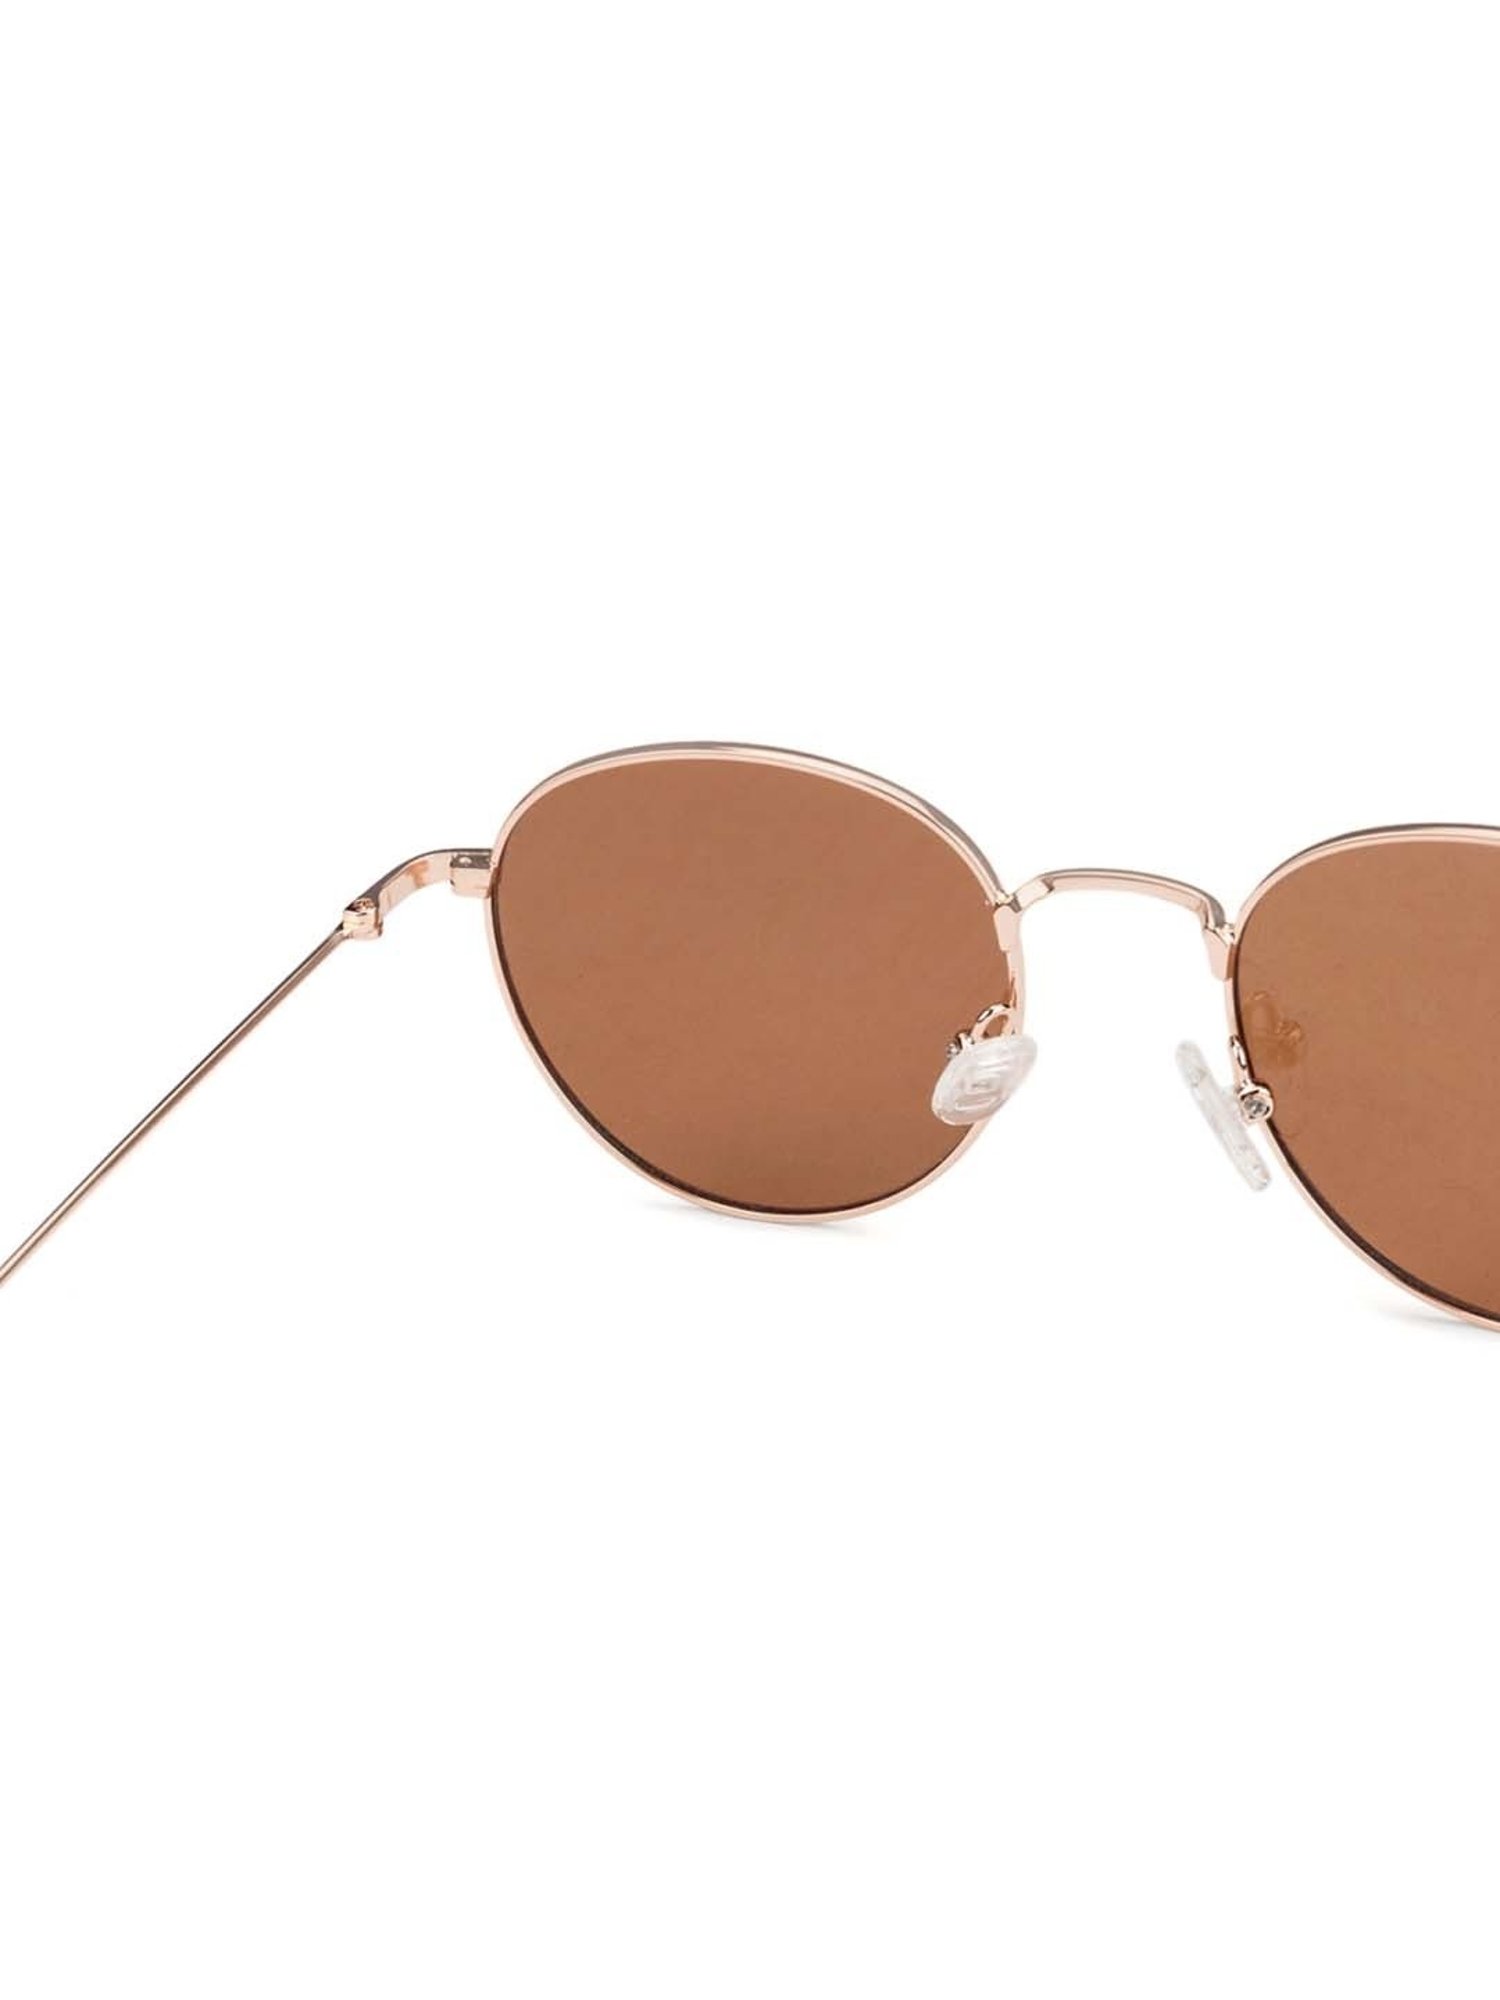 COASION Retro Small Round Polarized Sunglasses for India | Ubuy